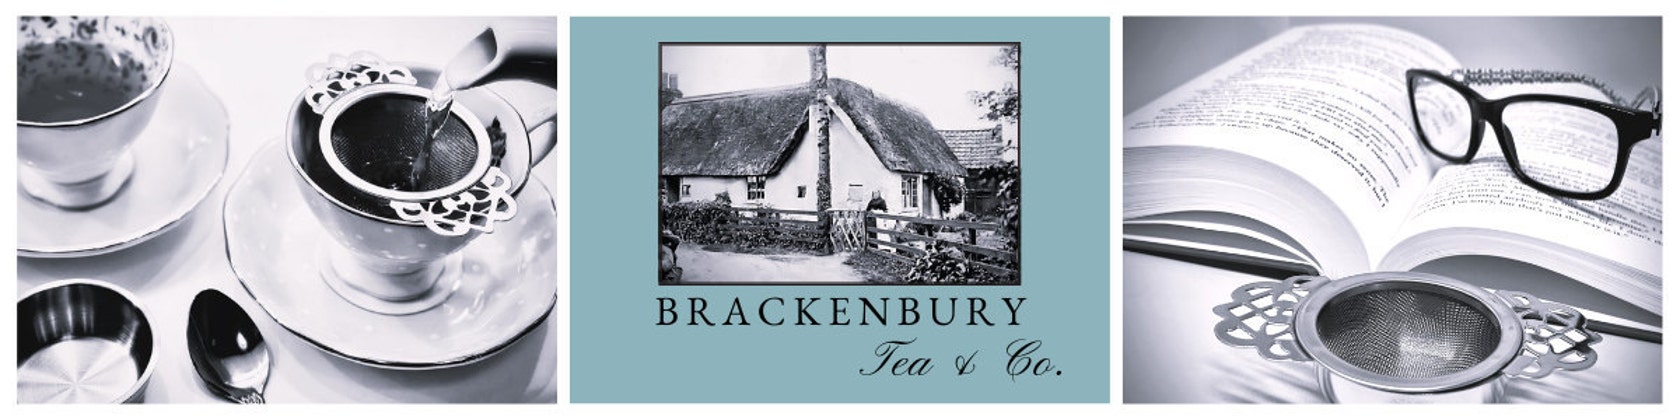 Edwardian Tea Strainer – Brackenbury Tea & Co.